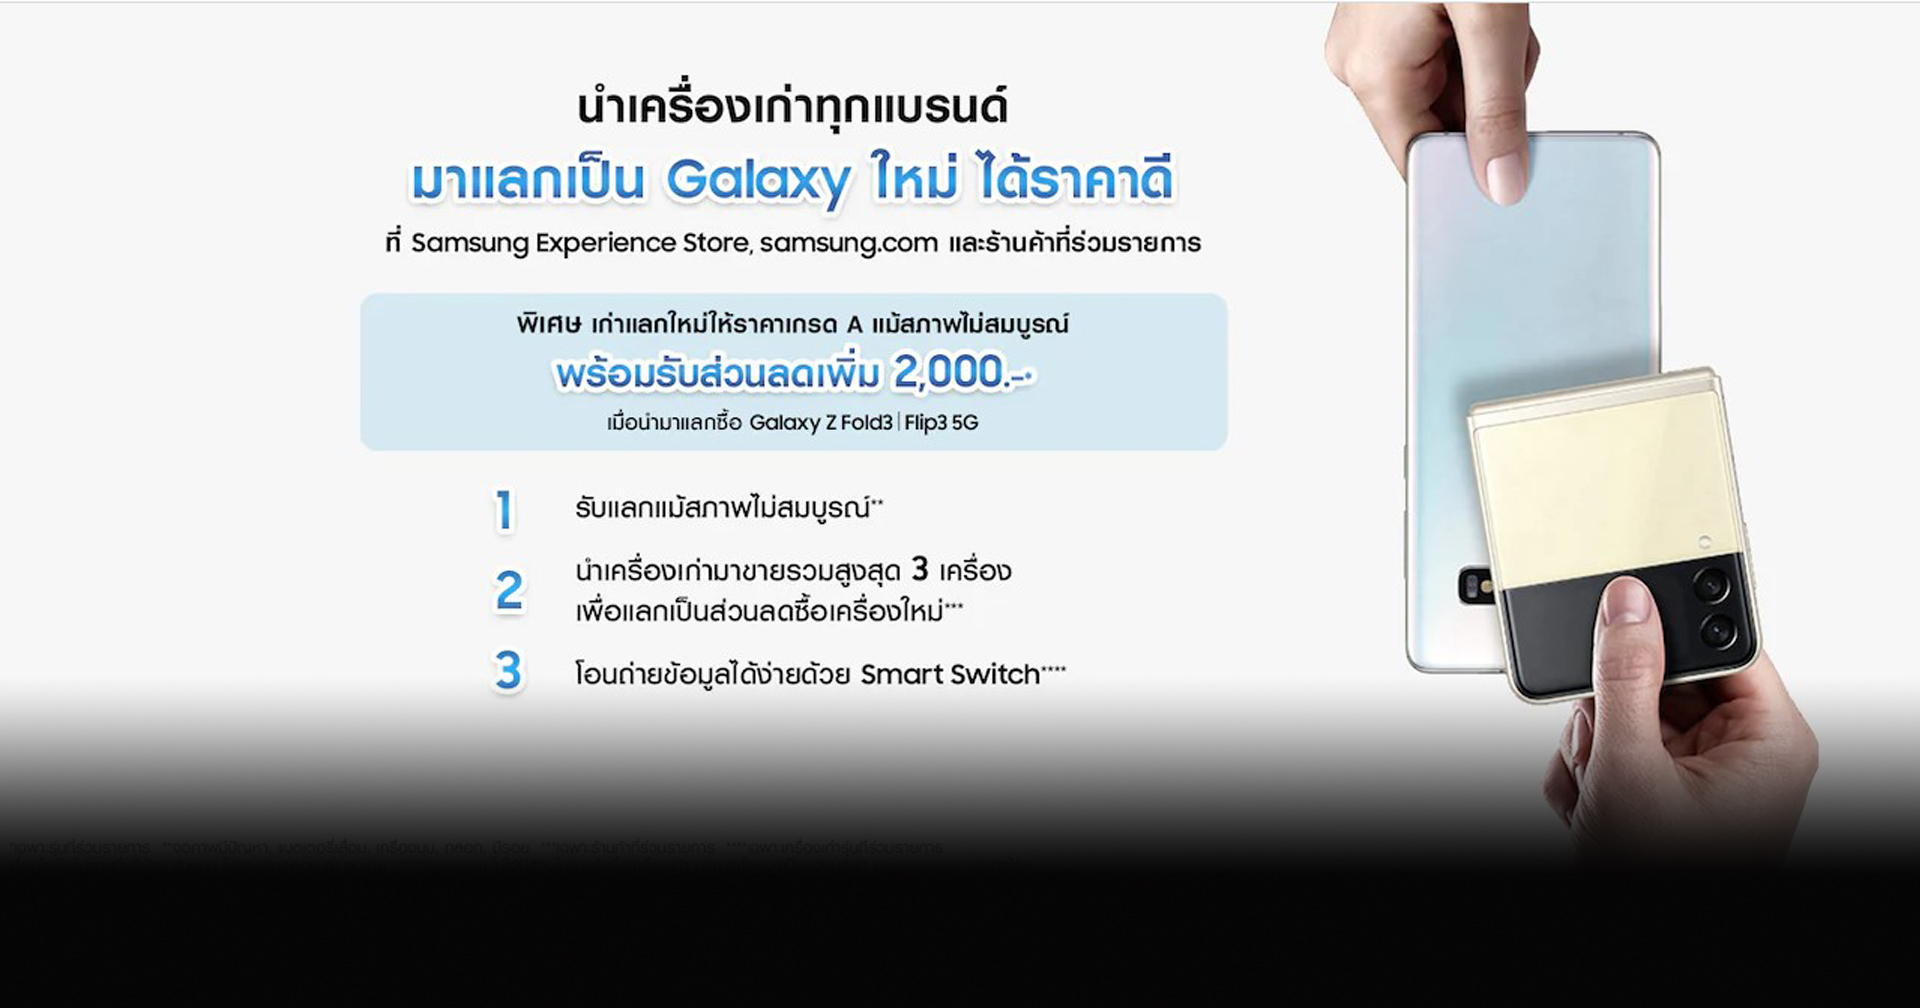 ซัมซุงชวนนำเครื่องเก่ามาแลกเป็นส่วนลด เพื่อซื้อ Galaxy Z Fold3 | Flip3 5G” รุ่นใหม่ล่าสุด